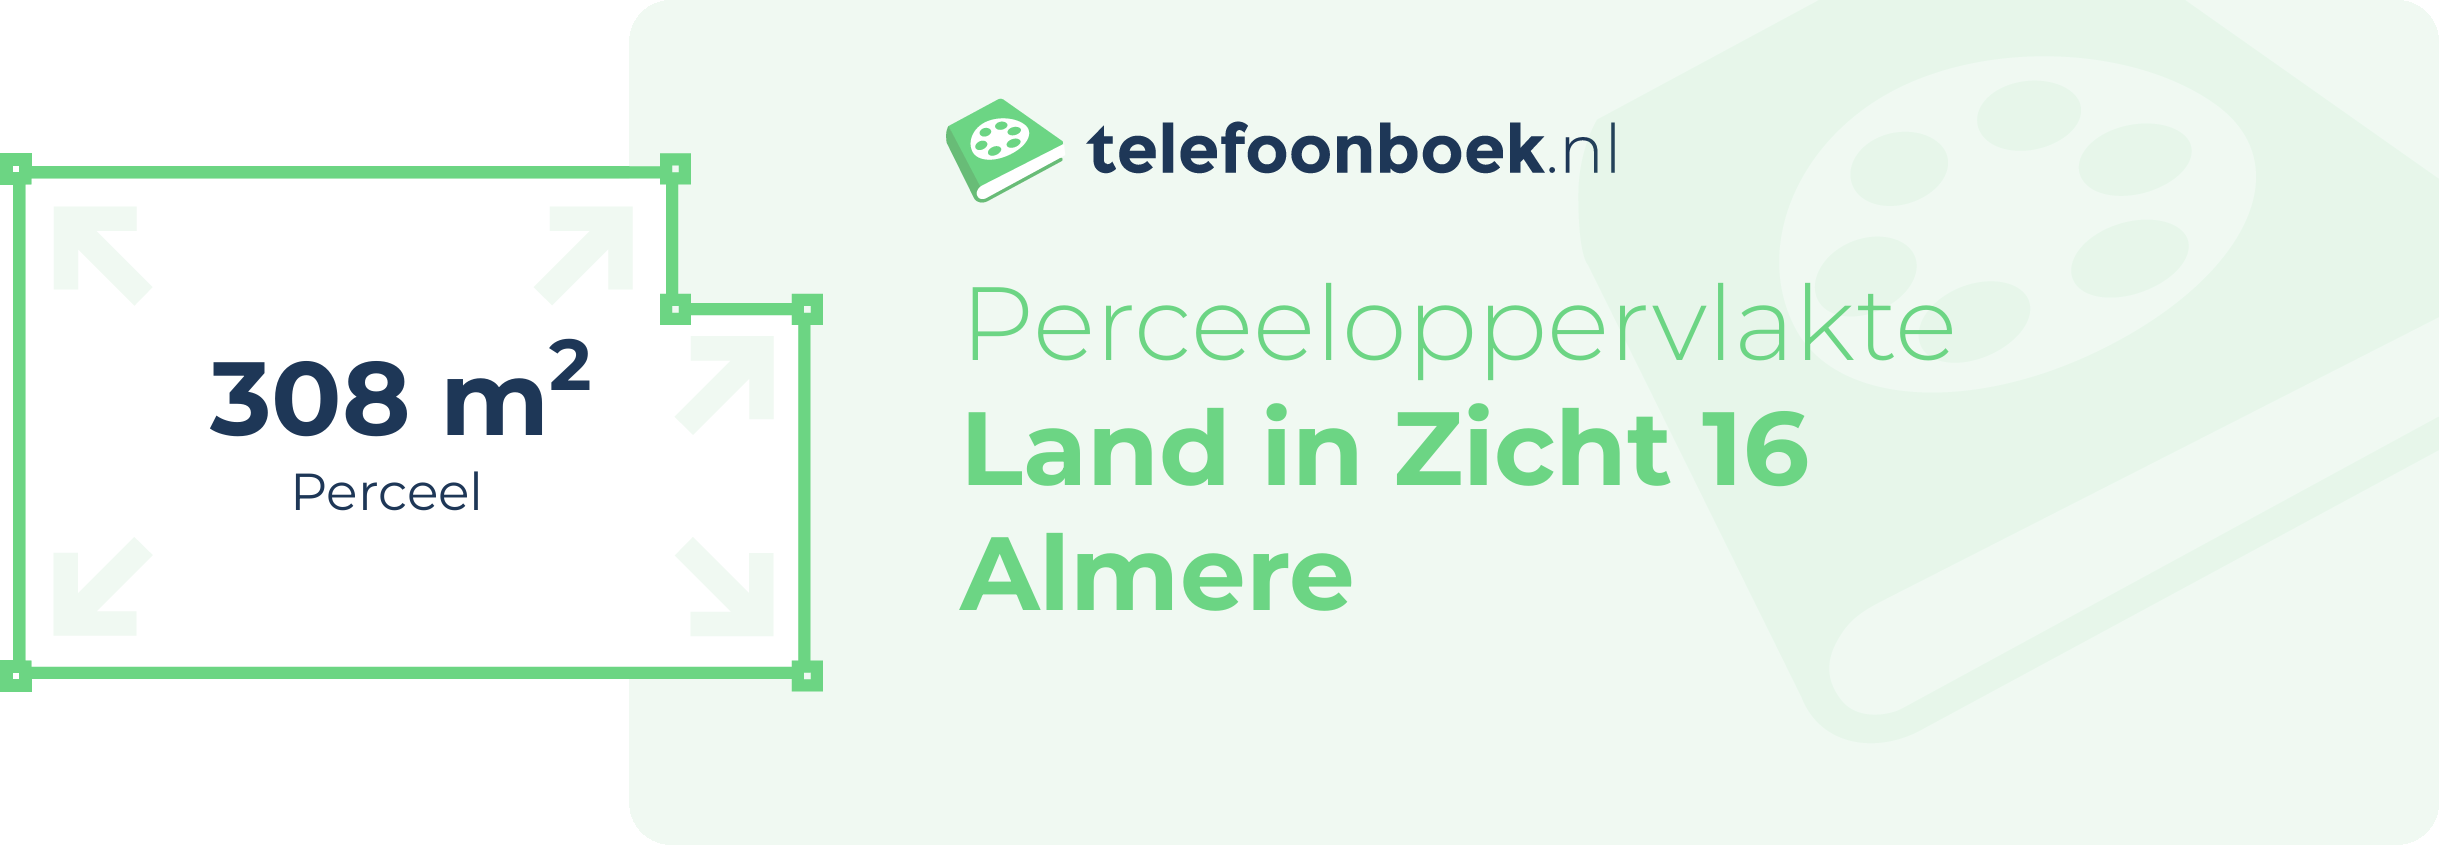 Perceeloppervlakte Land In Zicht 16 Almere